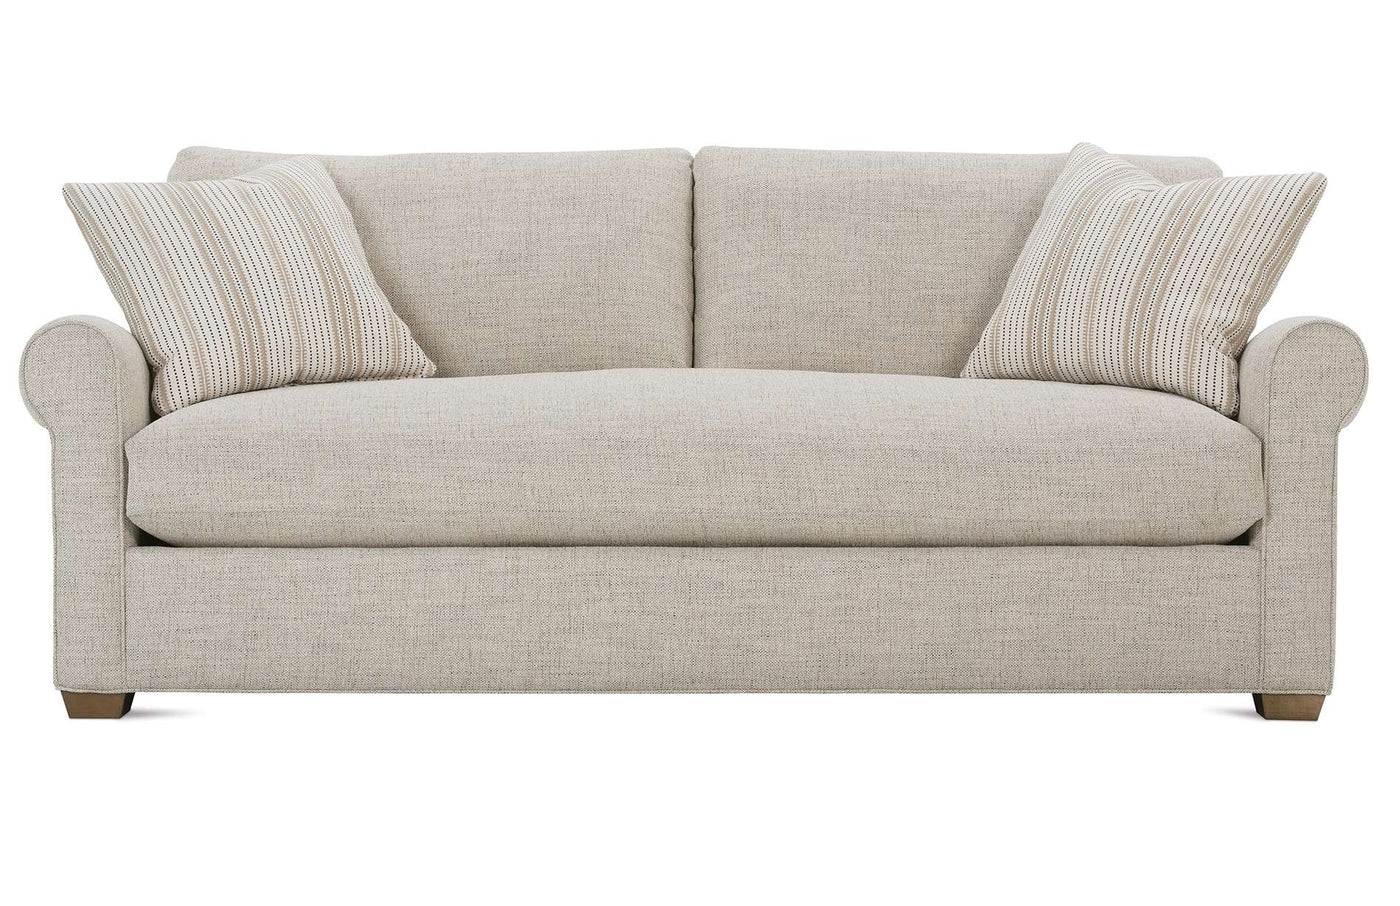 Aberdeen Bench Cushion Sofa